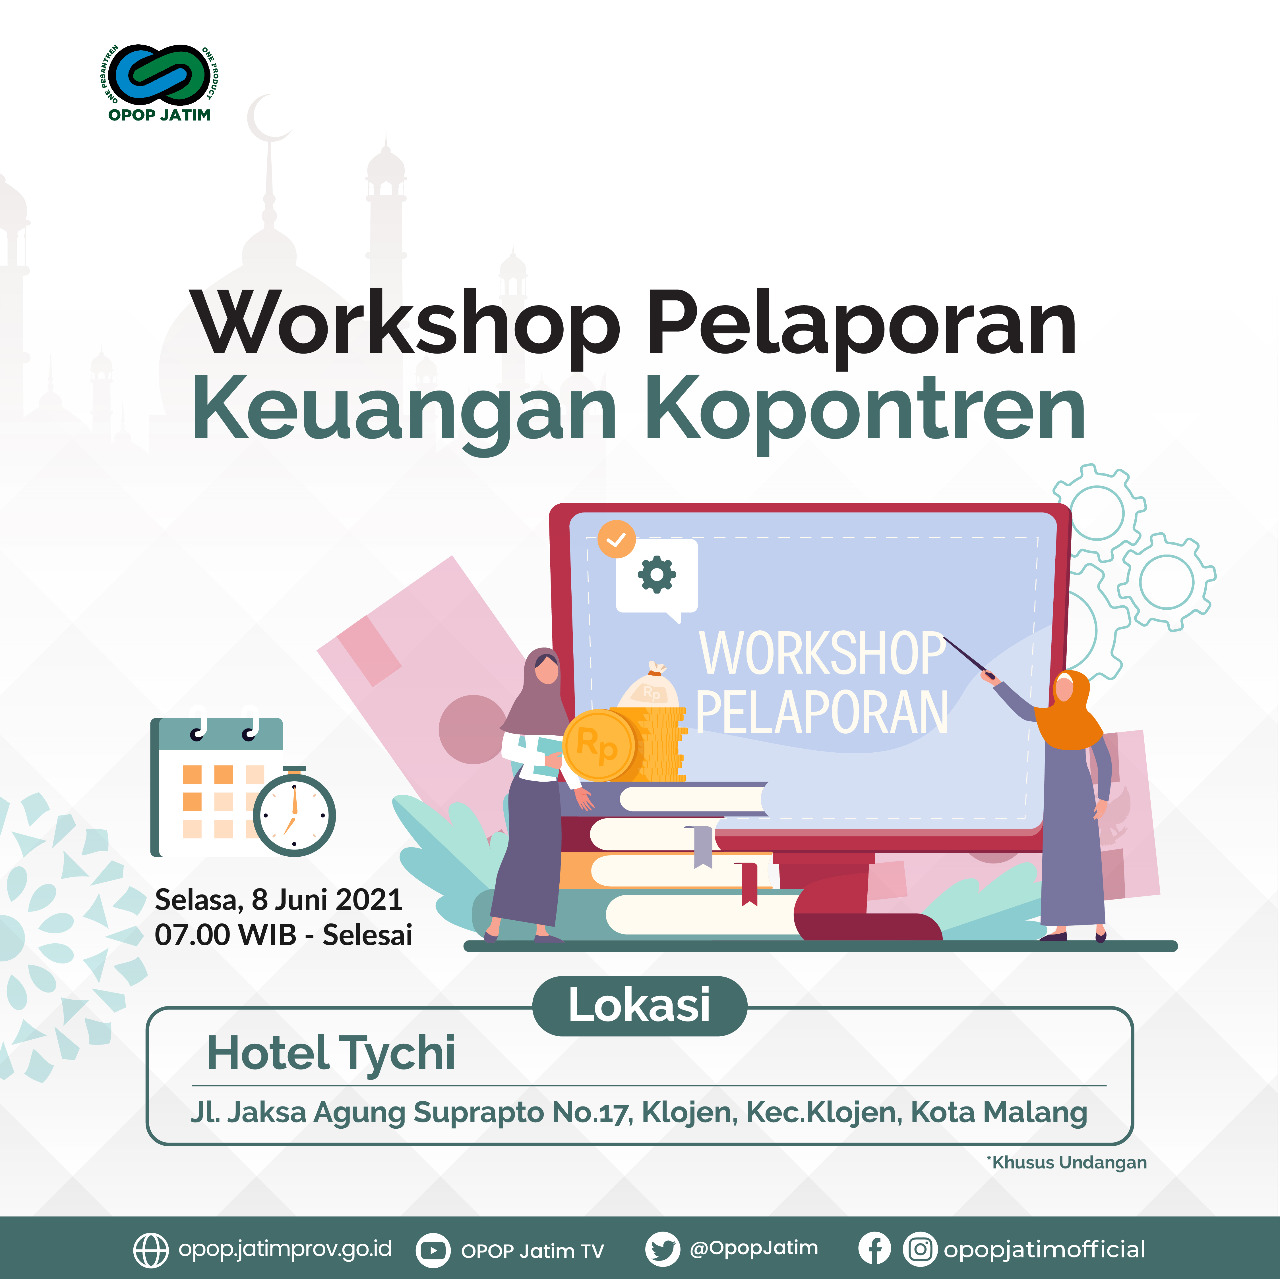 Workshop Pelaporan Keuangan Kopontren OPOP Jatim